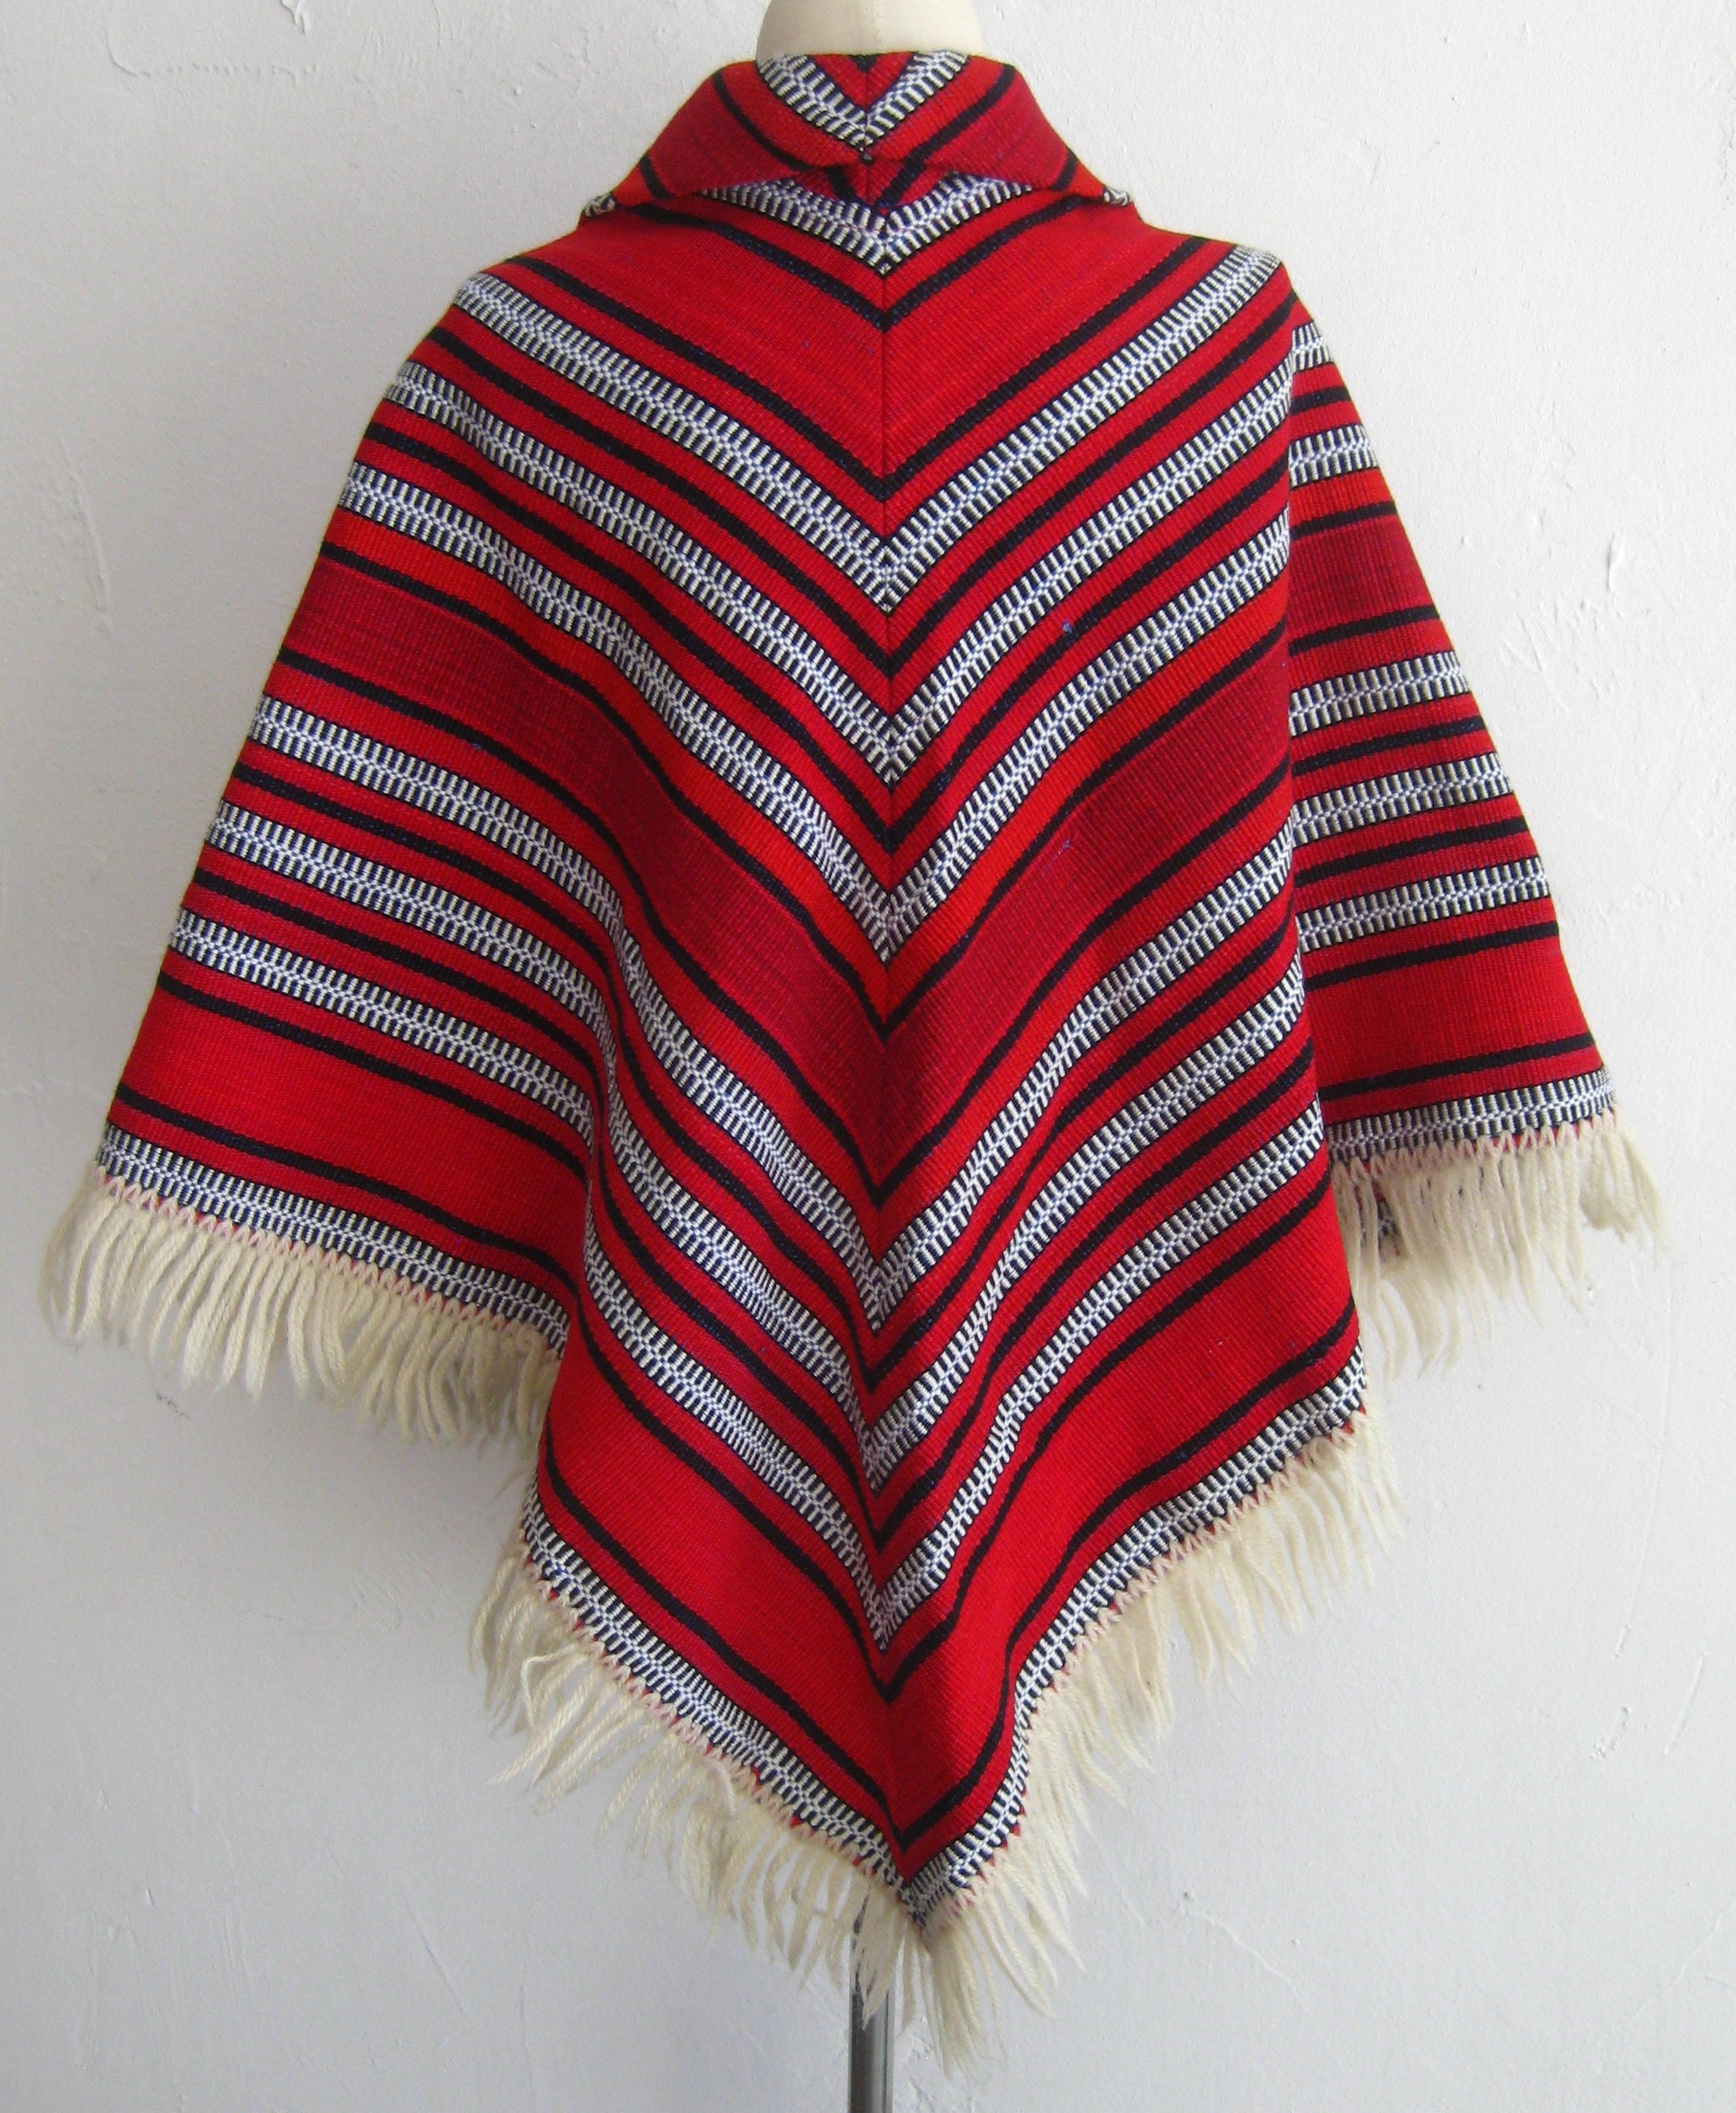 Vintage Handwoven Red White & Black Woven Wool Blanket Fringe | Etsy